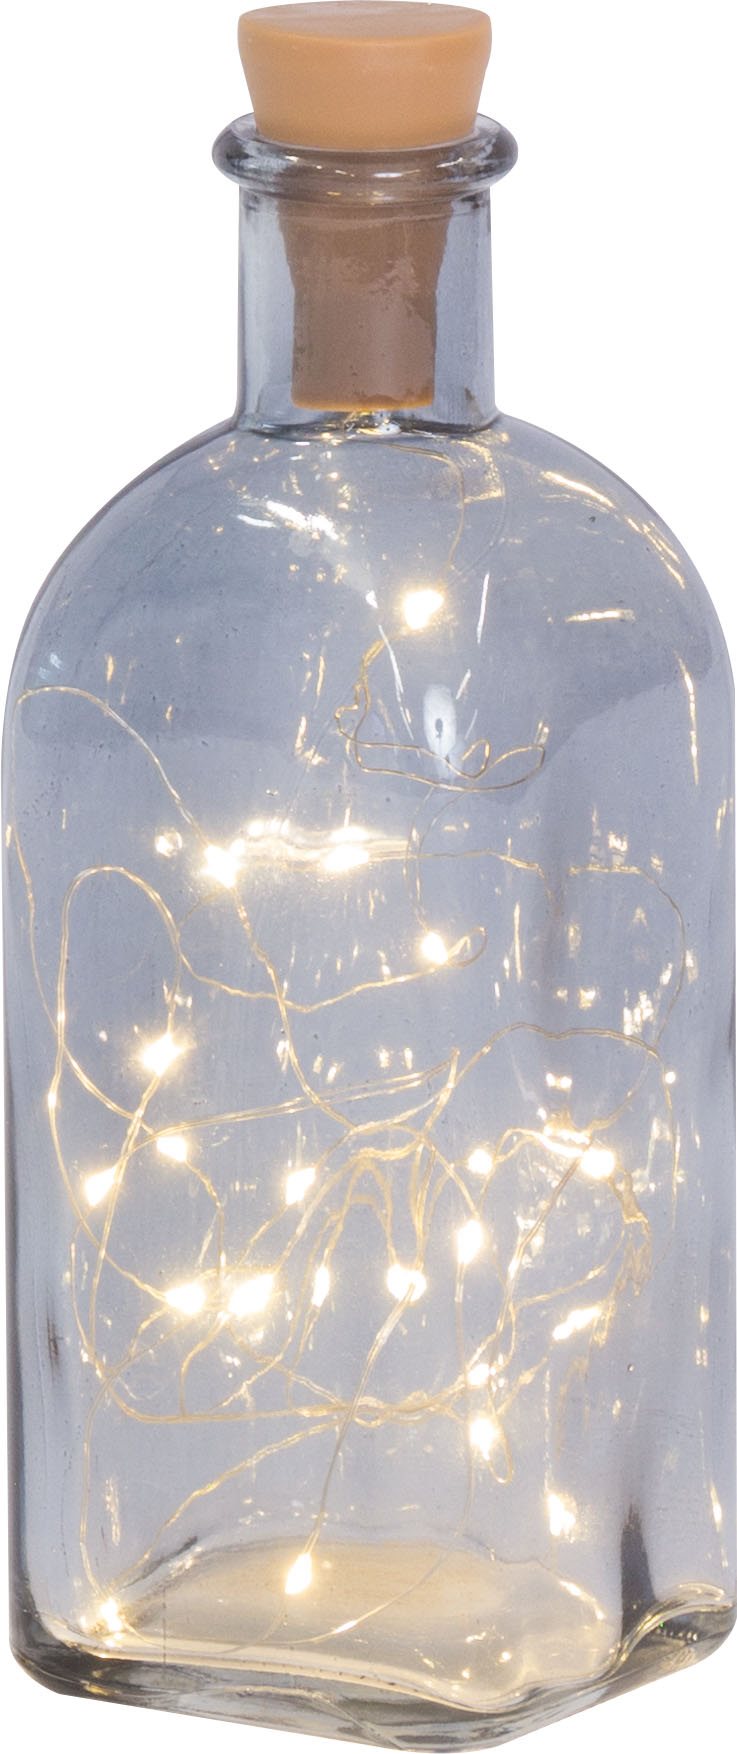 LIBRO_Glasflasche mit LED Lichterkette groß, 20 cm_€ 6,99